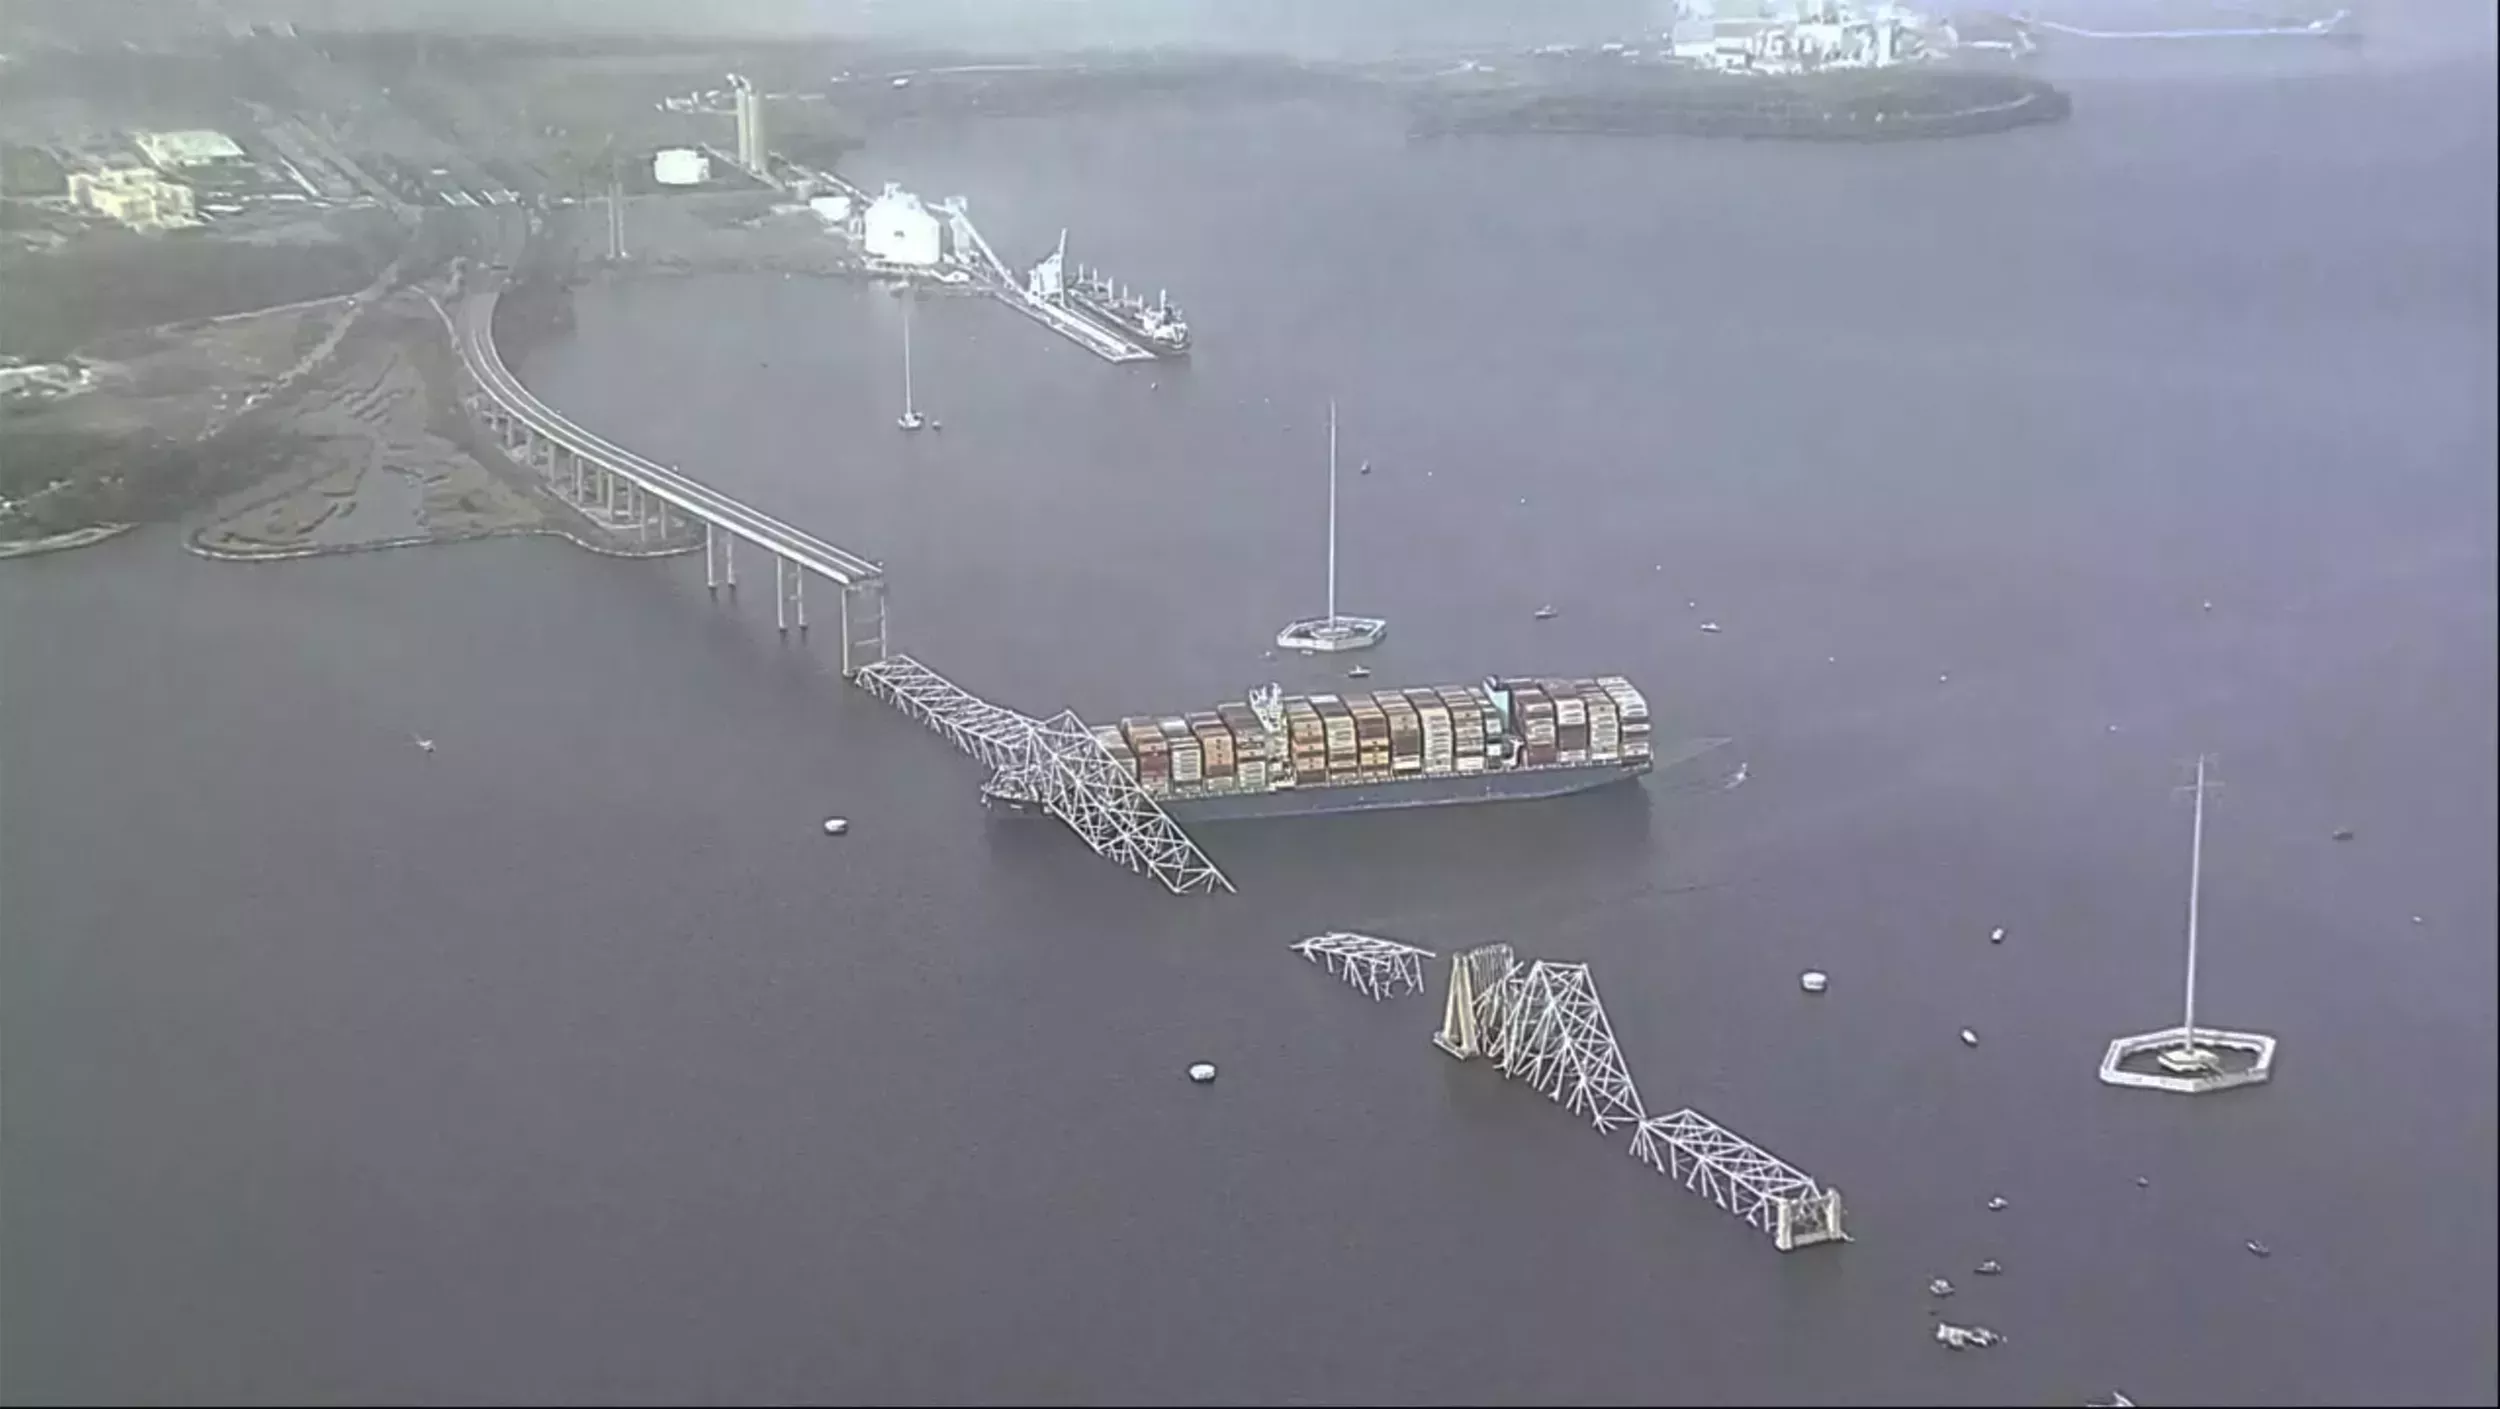 Colapso del puente de Baltimore: La llamada de socorro permitió a las autoridades cortar el tráfico antes del impacto - National | Globalnews.ca